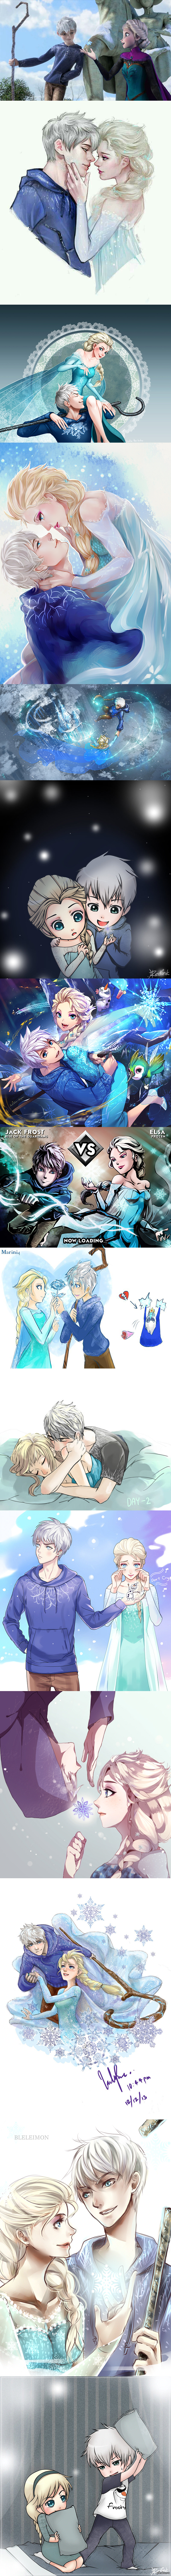 Art on Elsa (Frozen) and Jack Frost (Dreamkeepers) - Elsa, , Jack Frost, Frozen, rise of the Guardians, Cold heart, Fan art, Longpost, Fan Art, A selection, Art, Cartoons, Shipping, Crossover